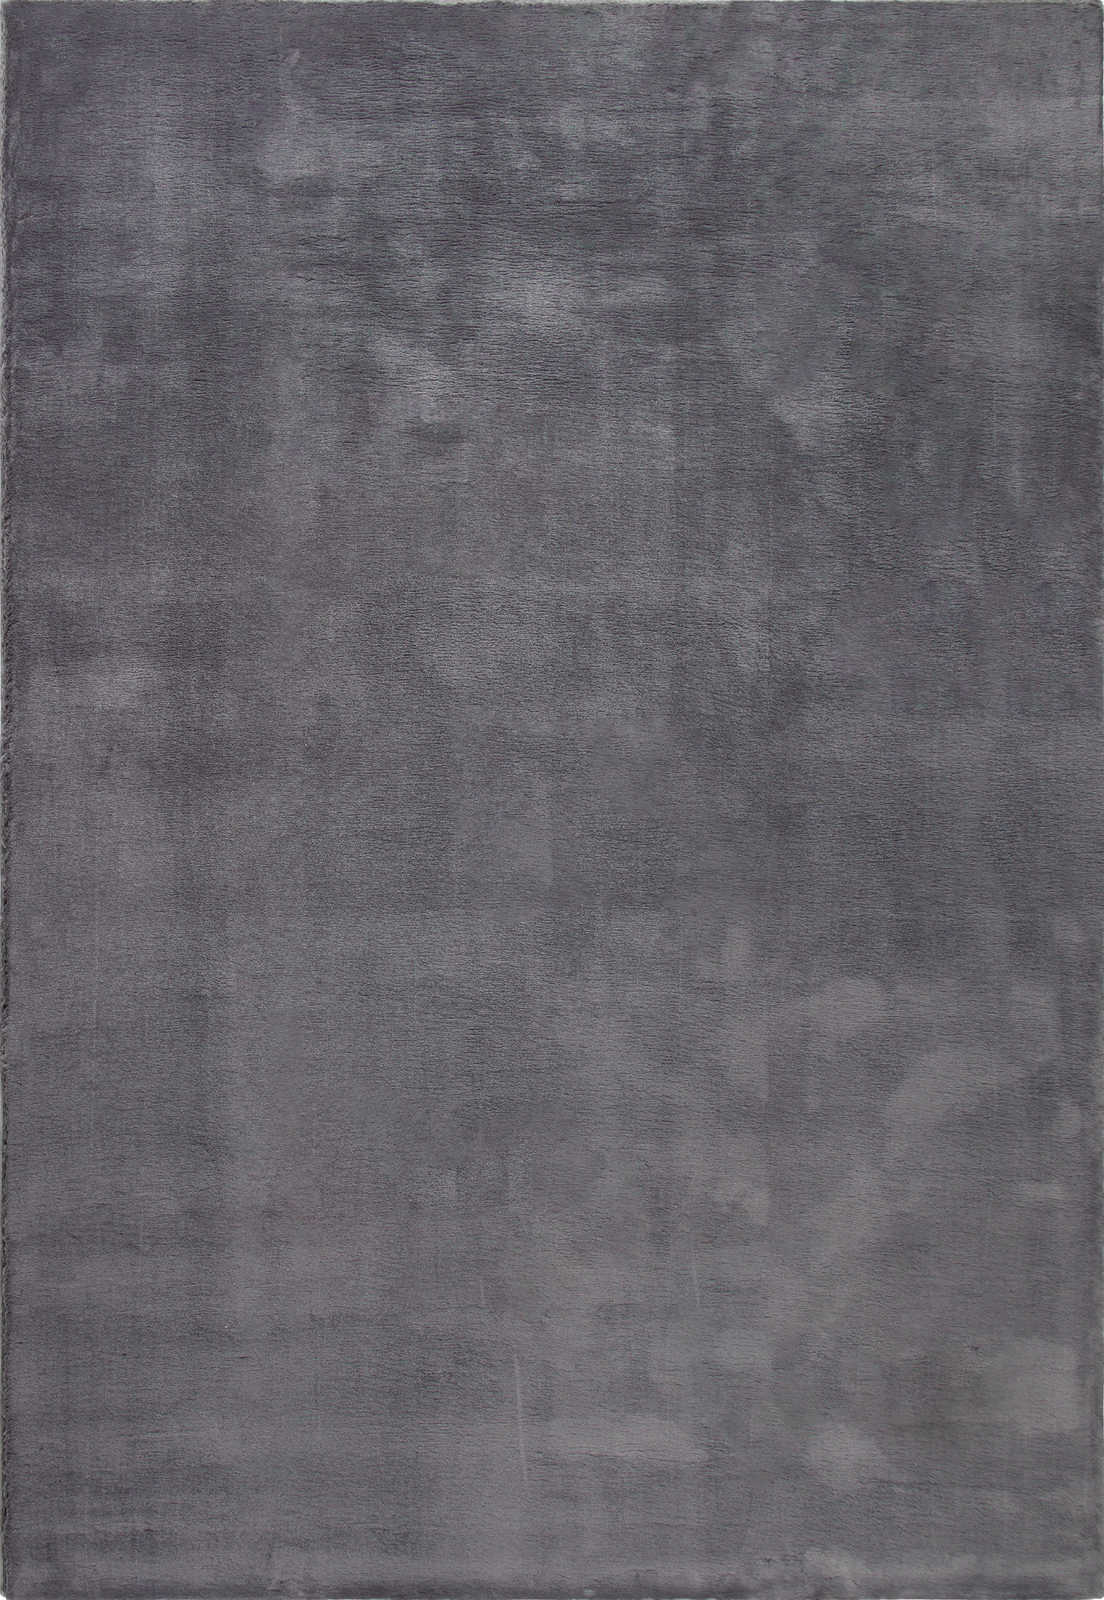             Moderner Hochflor Teppich in Anthrazit – 110 x 60 cm
        